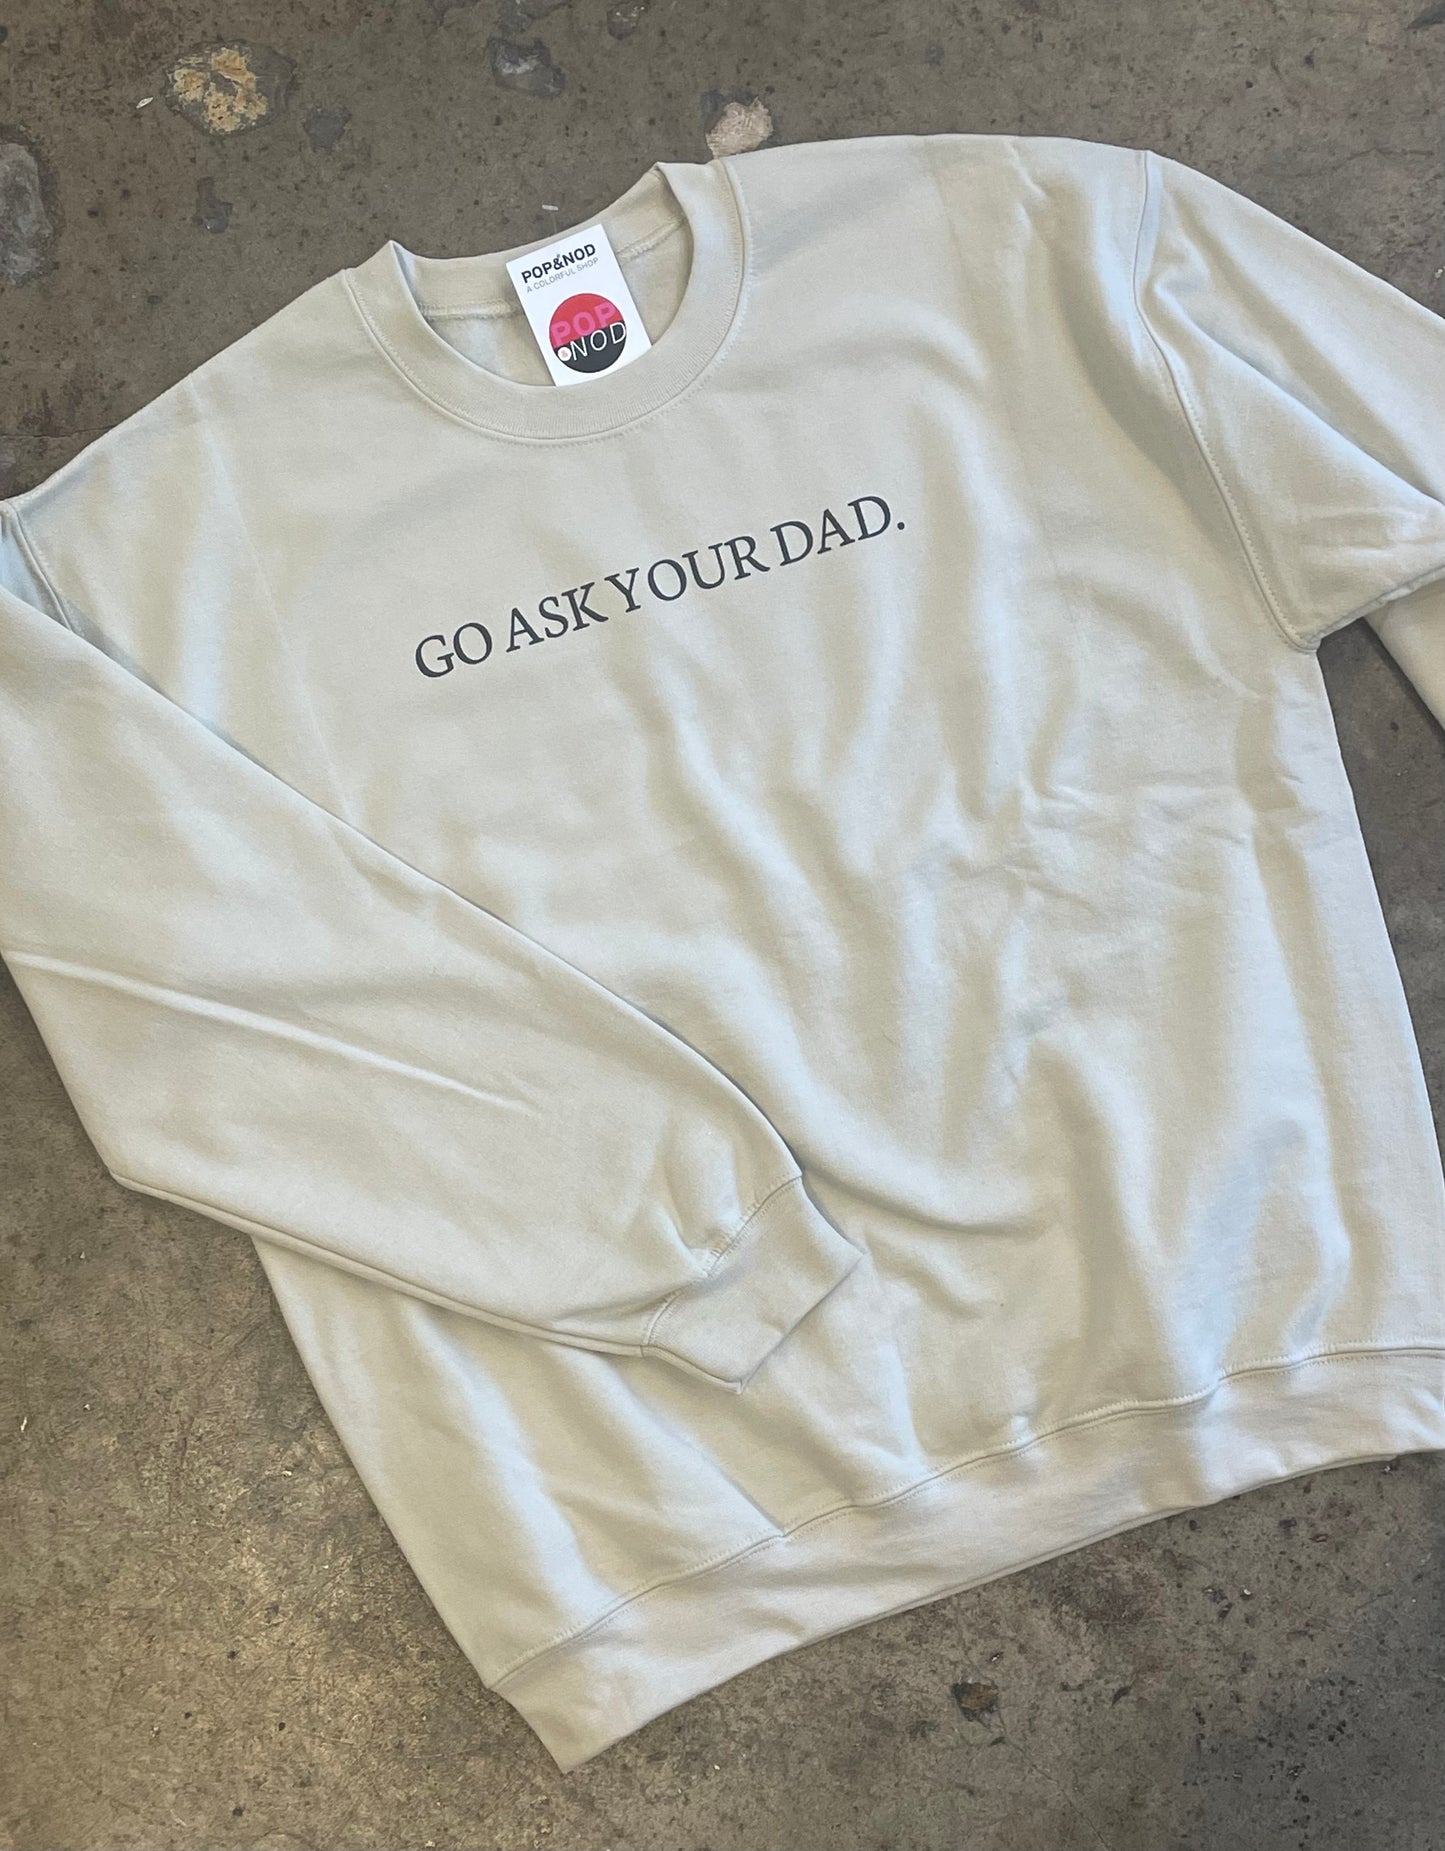 go ask your dad crewneck sweatshirt